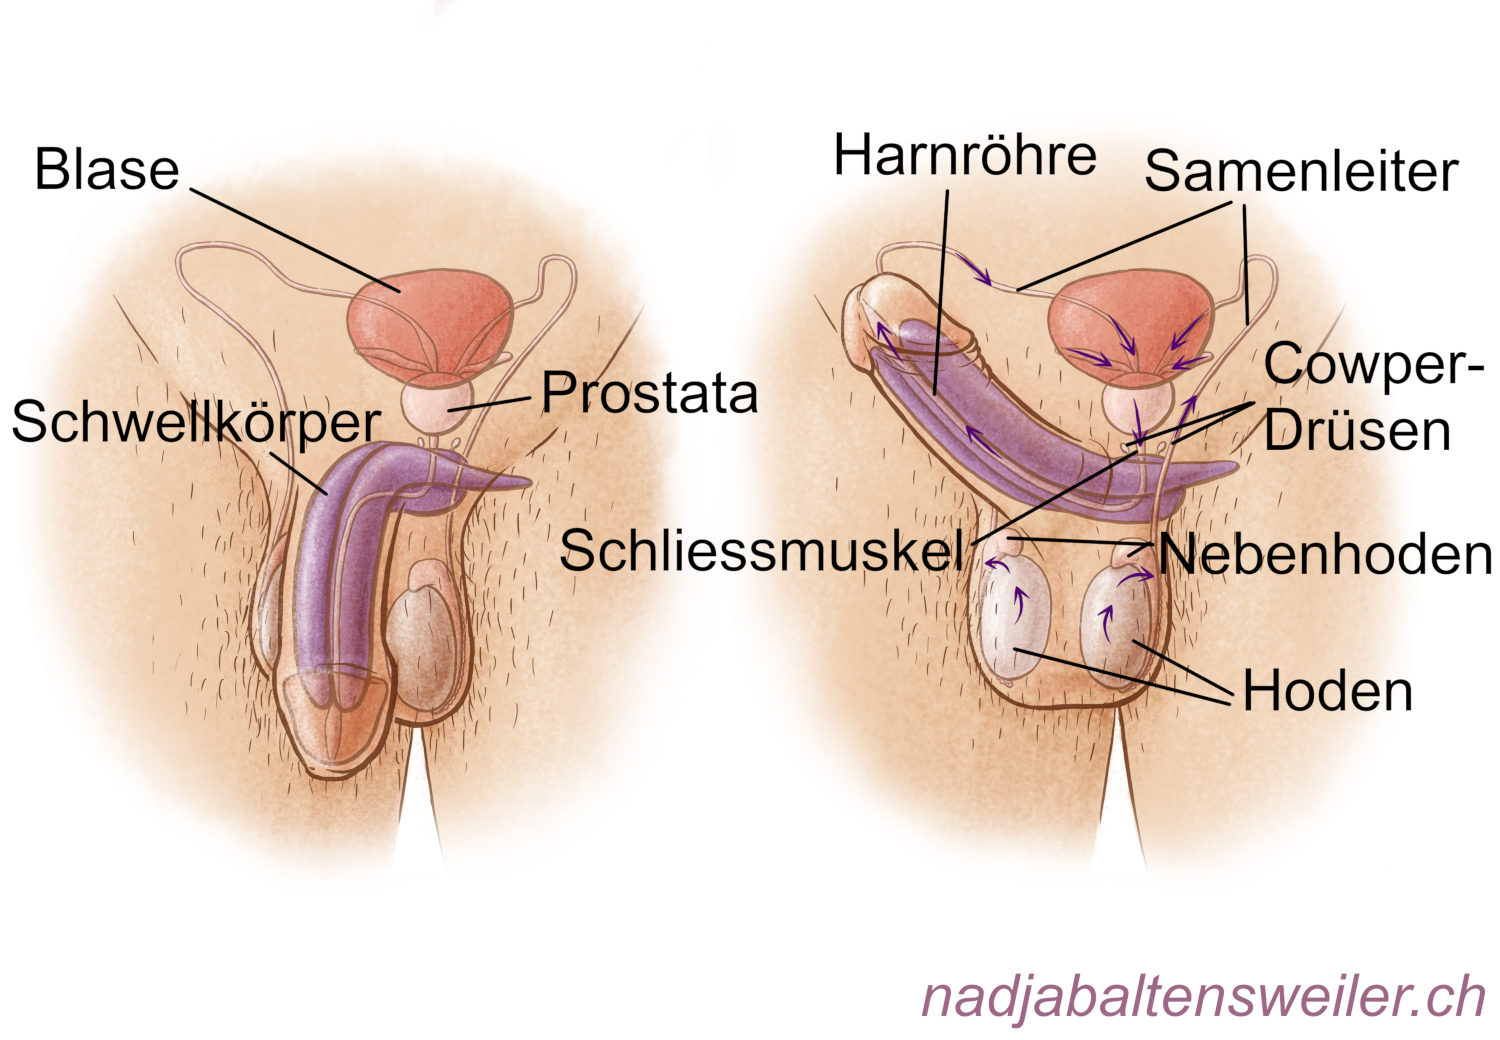 Du siehst zwei schematische Abbildungen vom Beckenbereich einer Person mit Penis. In der linken Abbildung ist der Penis schlaff. In der rechten Abbildung ist der Penis steif. In der linken Abbildung sind Blase, Prostata und Schwellkörper beschriftet. In der rechten Abbildung sind die Hoden und Nebenhoden, die Cowper-Drüsen, der Samenleiter, die Harnröhre und ein Schliessmuskel unterhalb der Blase beschriftet. Mit Pfeilen ist der Weg des Ejakulats eingezeichnet. In den Hoden zeigen Pfeile nach oben zu den Nebenhoden, dann zeigen Pfeile die Samenleiter entlang zur Blase. In der Blase zeigen Pfeile von den Samenbläschen nach innen Richtung Prostata. Von der Prostata führt ein Pfeil in die Harnröhre und in der Harnröhre zeigen Pfeile Richtung Penisspitze.